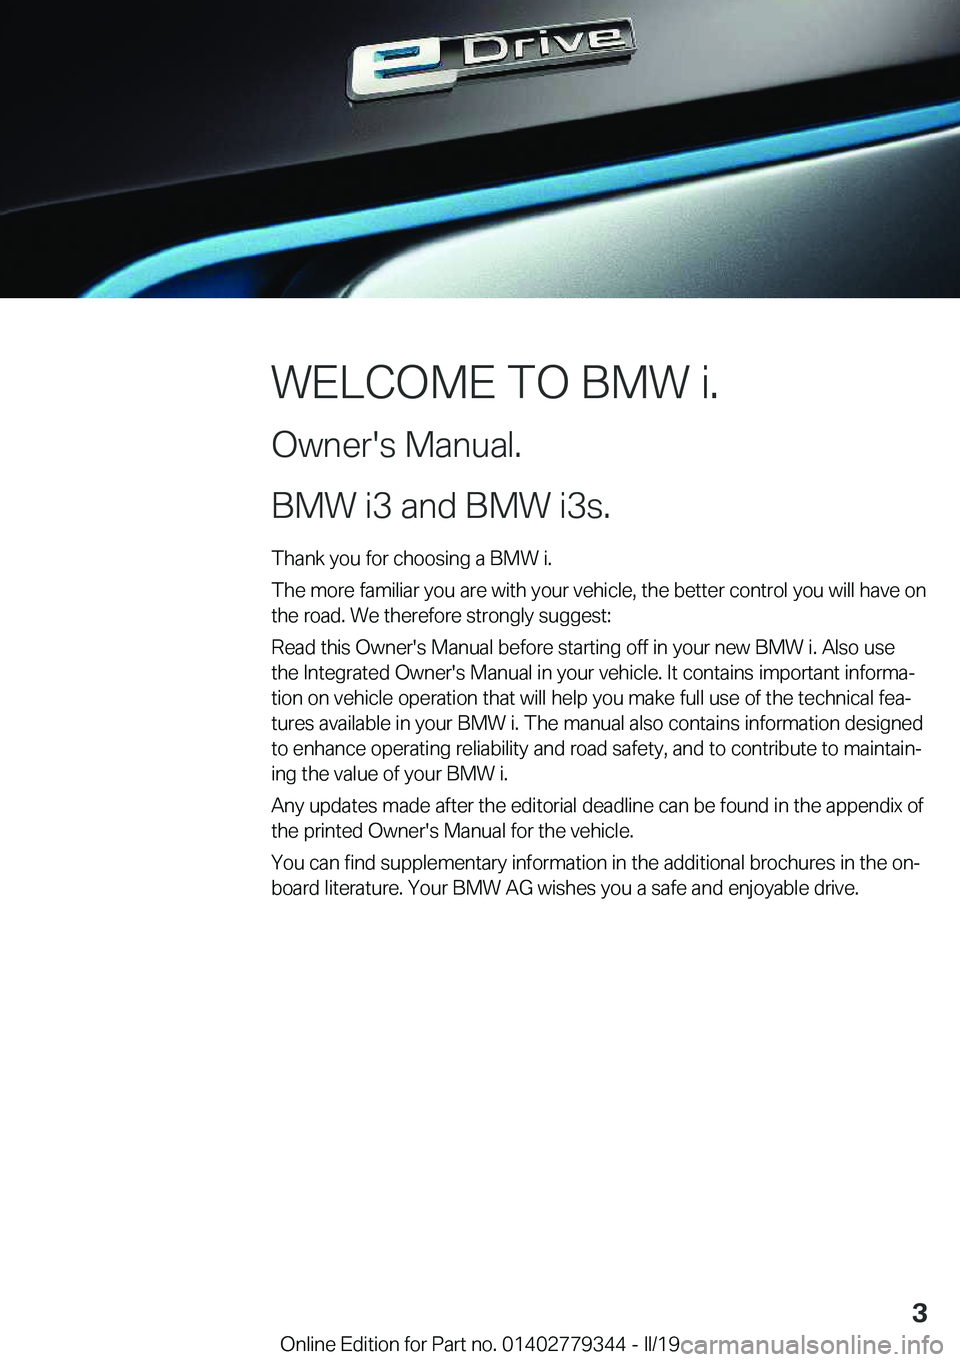 BMW I3 2019  Owners Manual �W�E�L�C�O�M�E��T�O��B�M�W��i�.
�O�w�n�e�r�'�s��M�a�n�u�a�l�.
�B�M�W��i�3��a�n�d��B�M�W��i�3�s�.� �T�h�a�n�k��y�o�u��f�o�r��c�h�o�o�s�i�n�g��a��B�M�W��i�.
�T�h�e��m�o�r�e��f�a�m�i